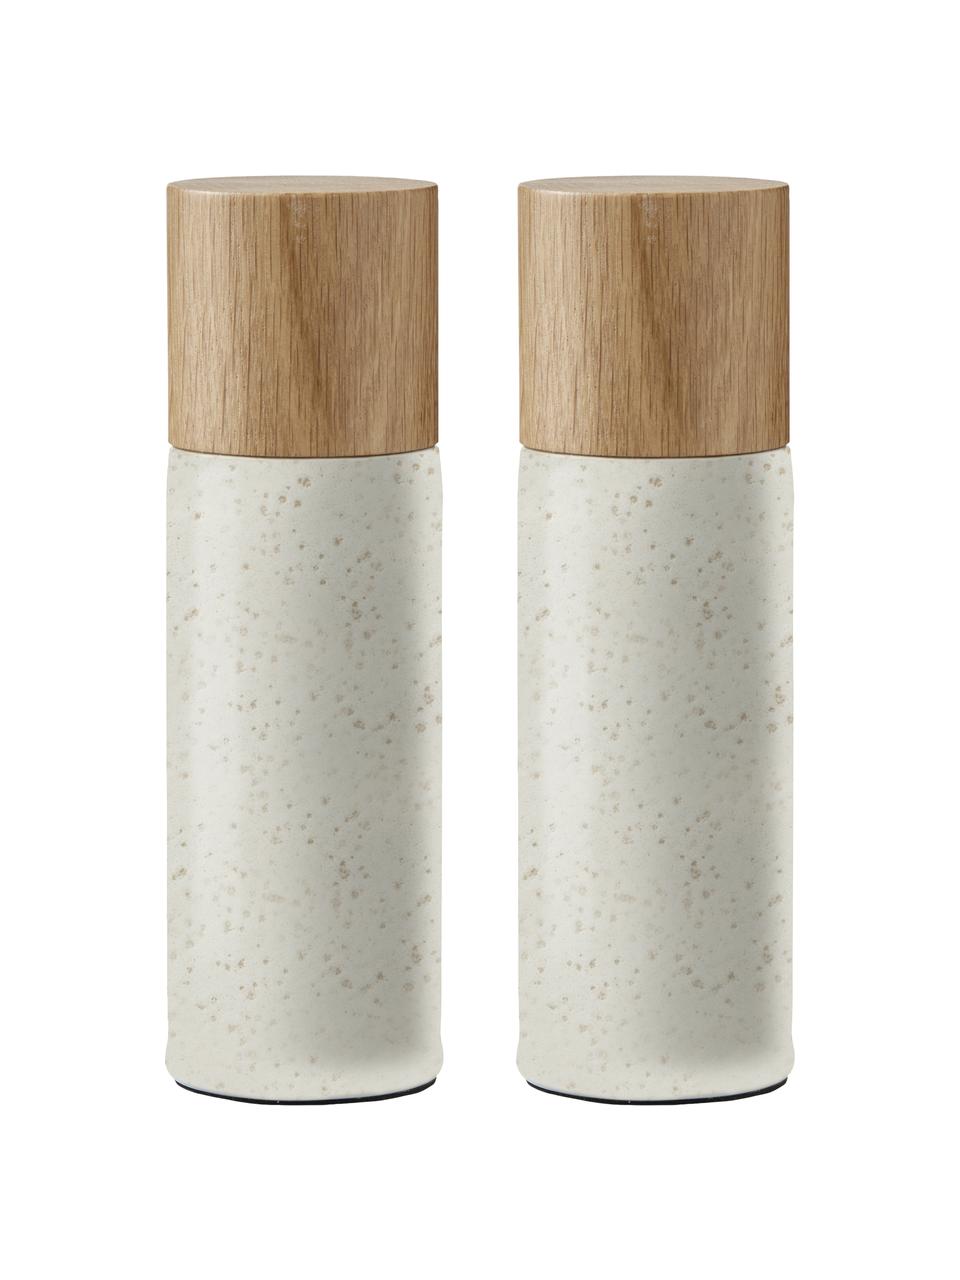 Keramiek zout- en pepermolen Bizz met houten deksel, 2-delig, Deksel: eikenhout, Lichtbeige, eikenhout, Ø 5 x H 17 cm